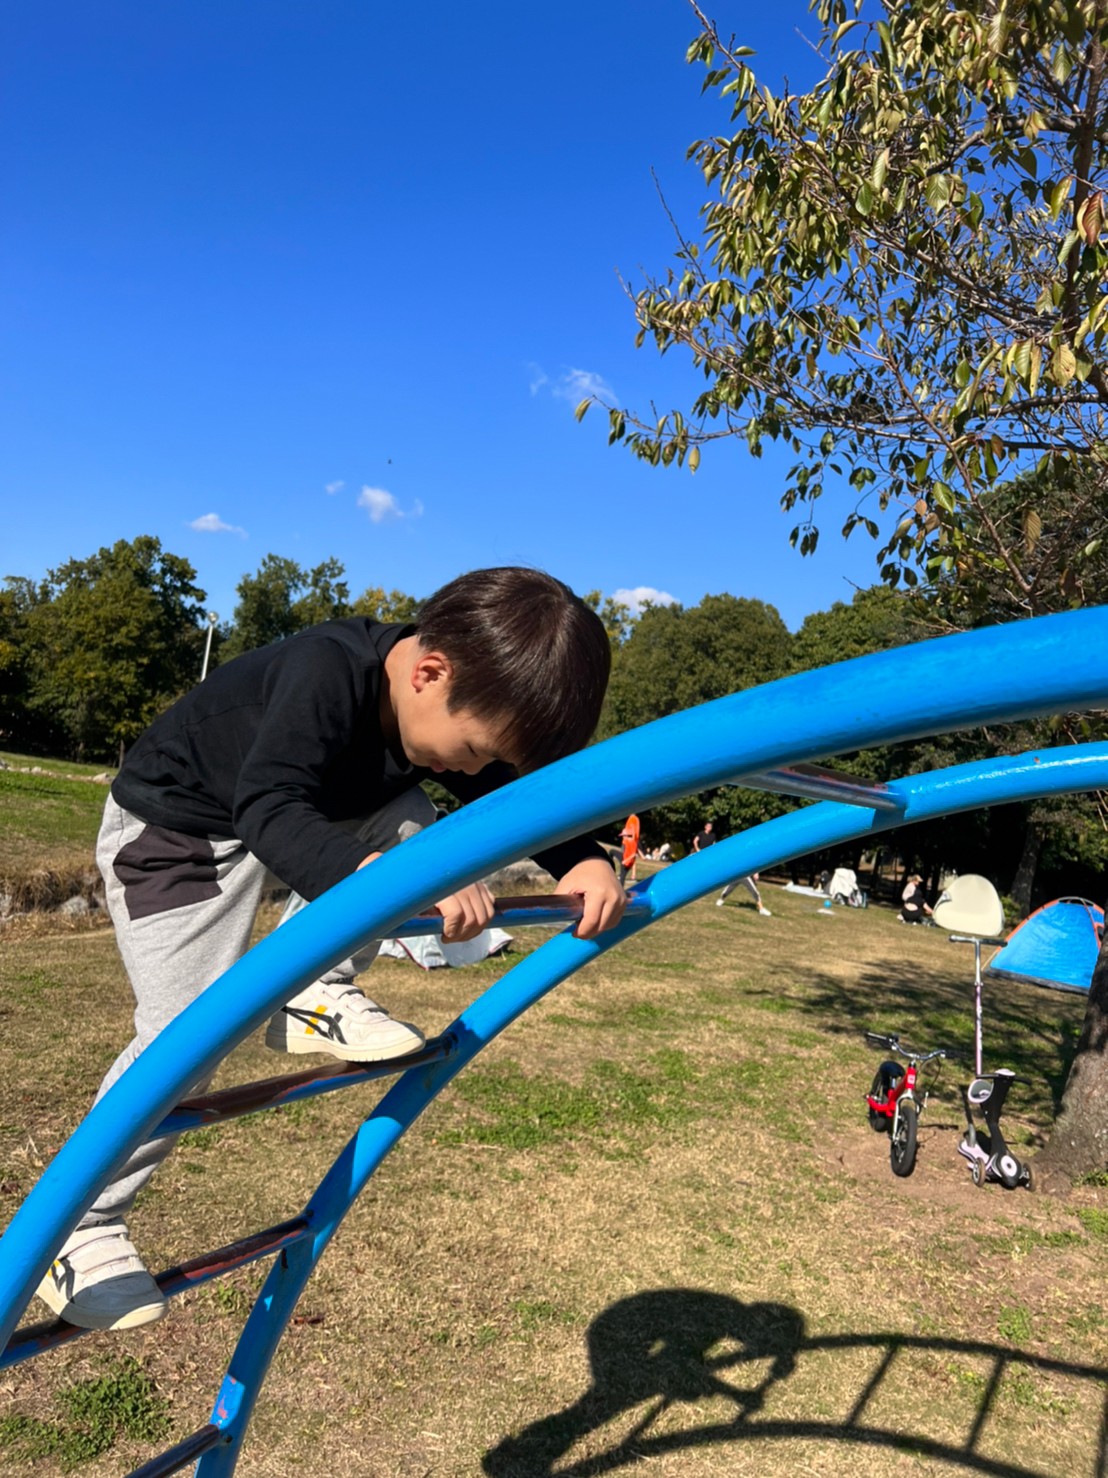 久宝寺緑地公園の雲梯に登って遊ぶ小学生の男の子